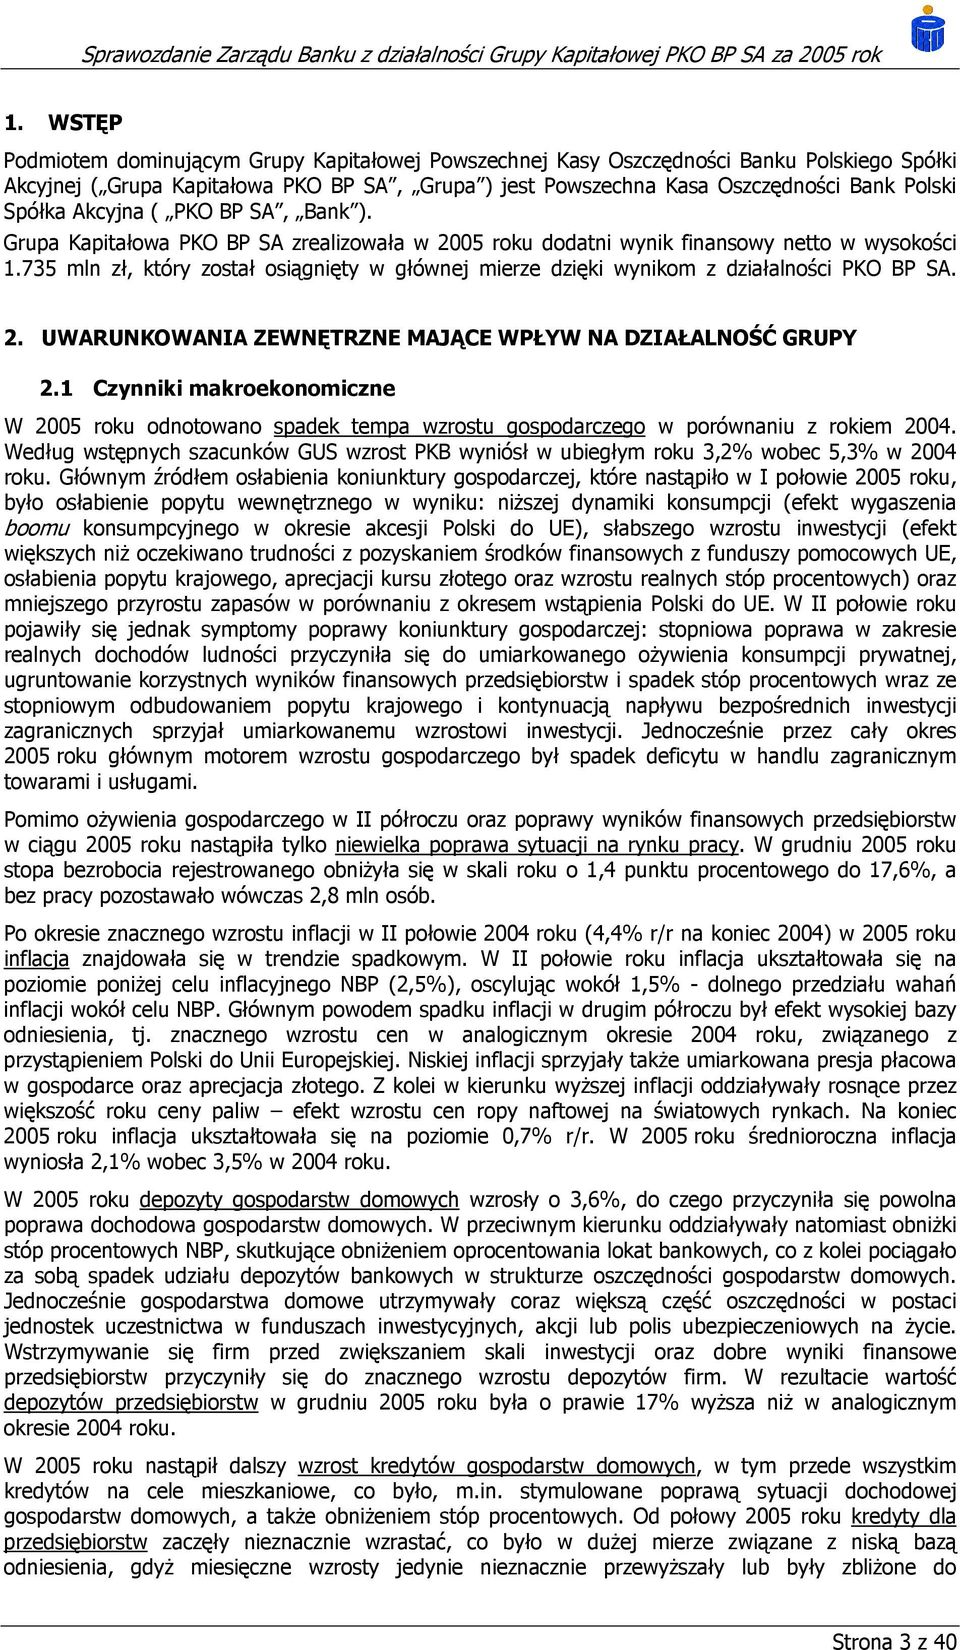 735 mln zł, który został osiągnięty w głównej mierze dzięki wynikom z działalności PKO BP SA. 2. UWARUNKOWANIA ZEWNĘTRZNE MAJĄCE WPŁYW NA DZIAŁALNOŚĆ GRUPY 2.